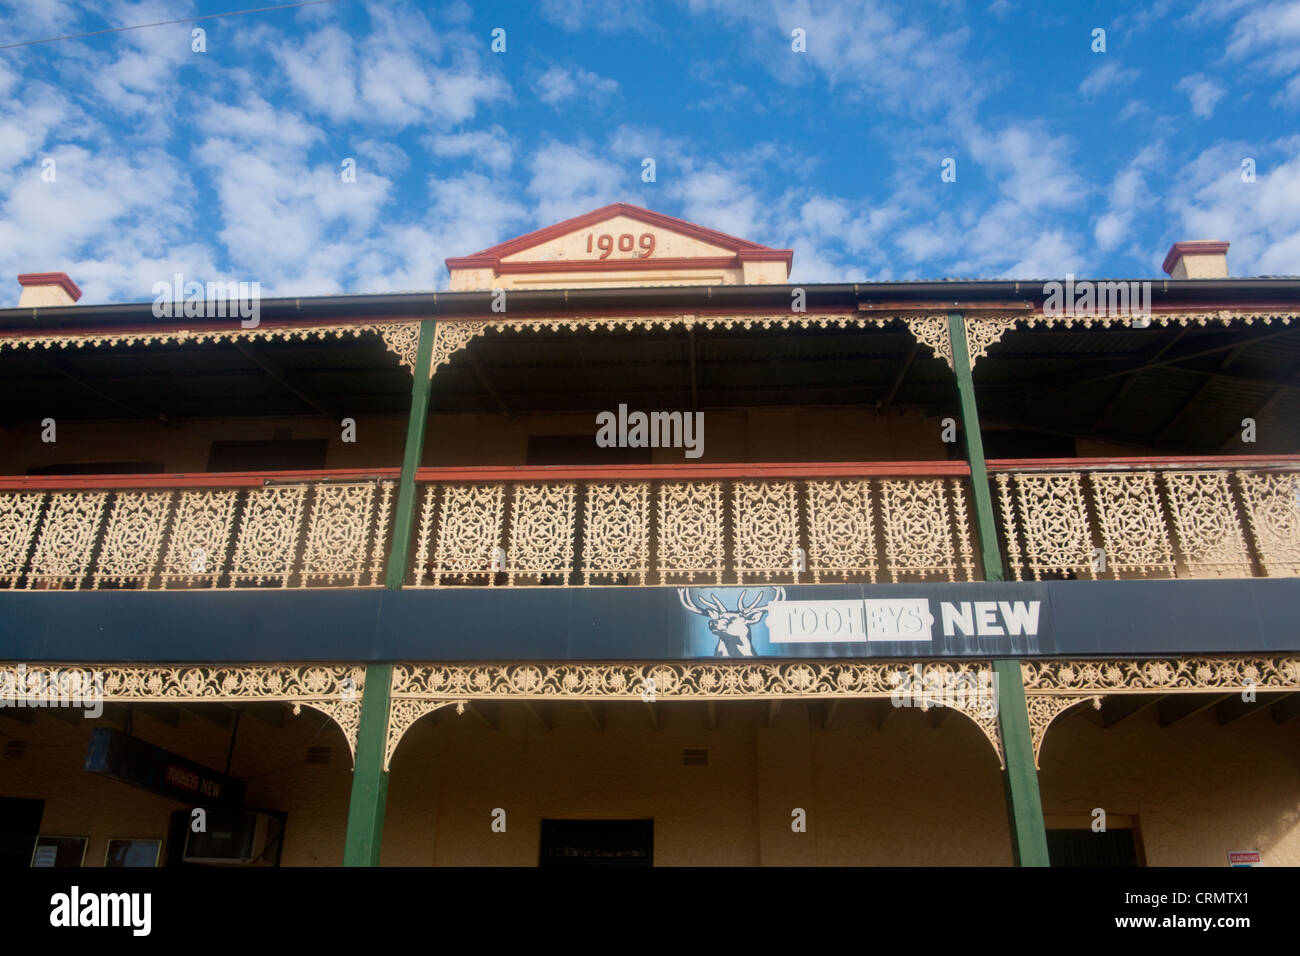 Facade of Royal Hotel Boggabri Between Gunnedah and Narrabri New South Wales Australia Stock Photo